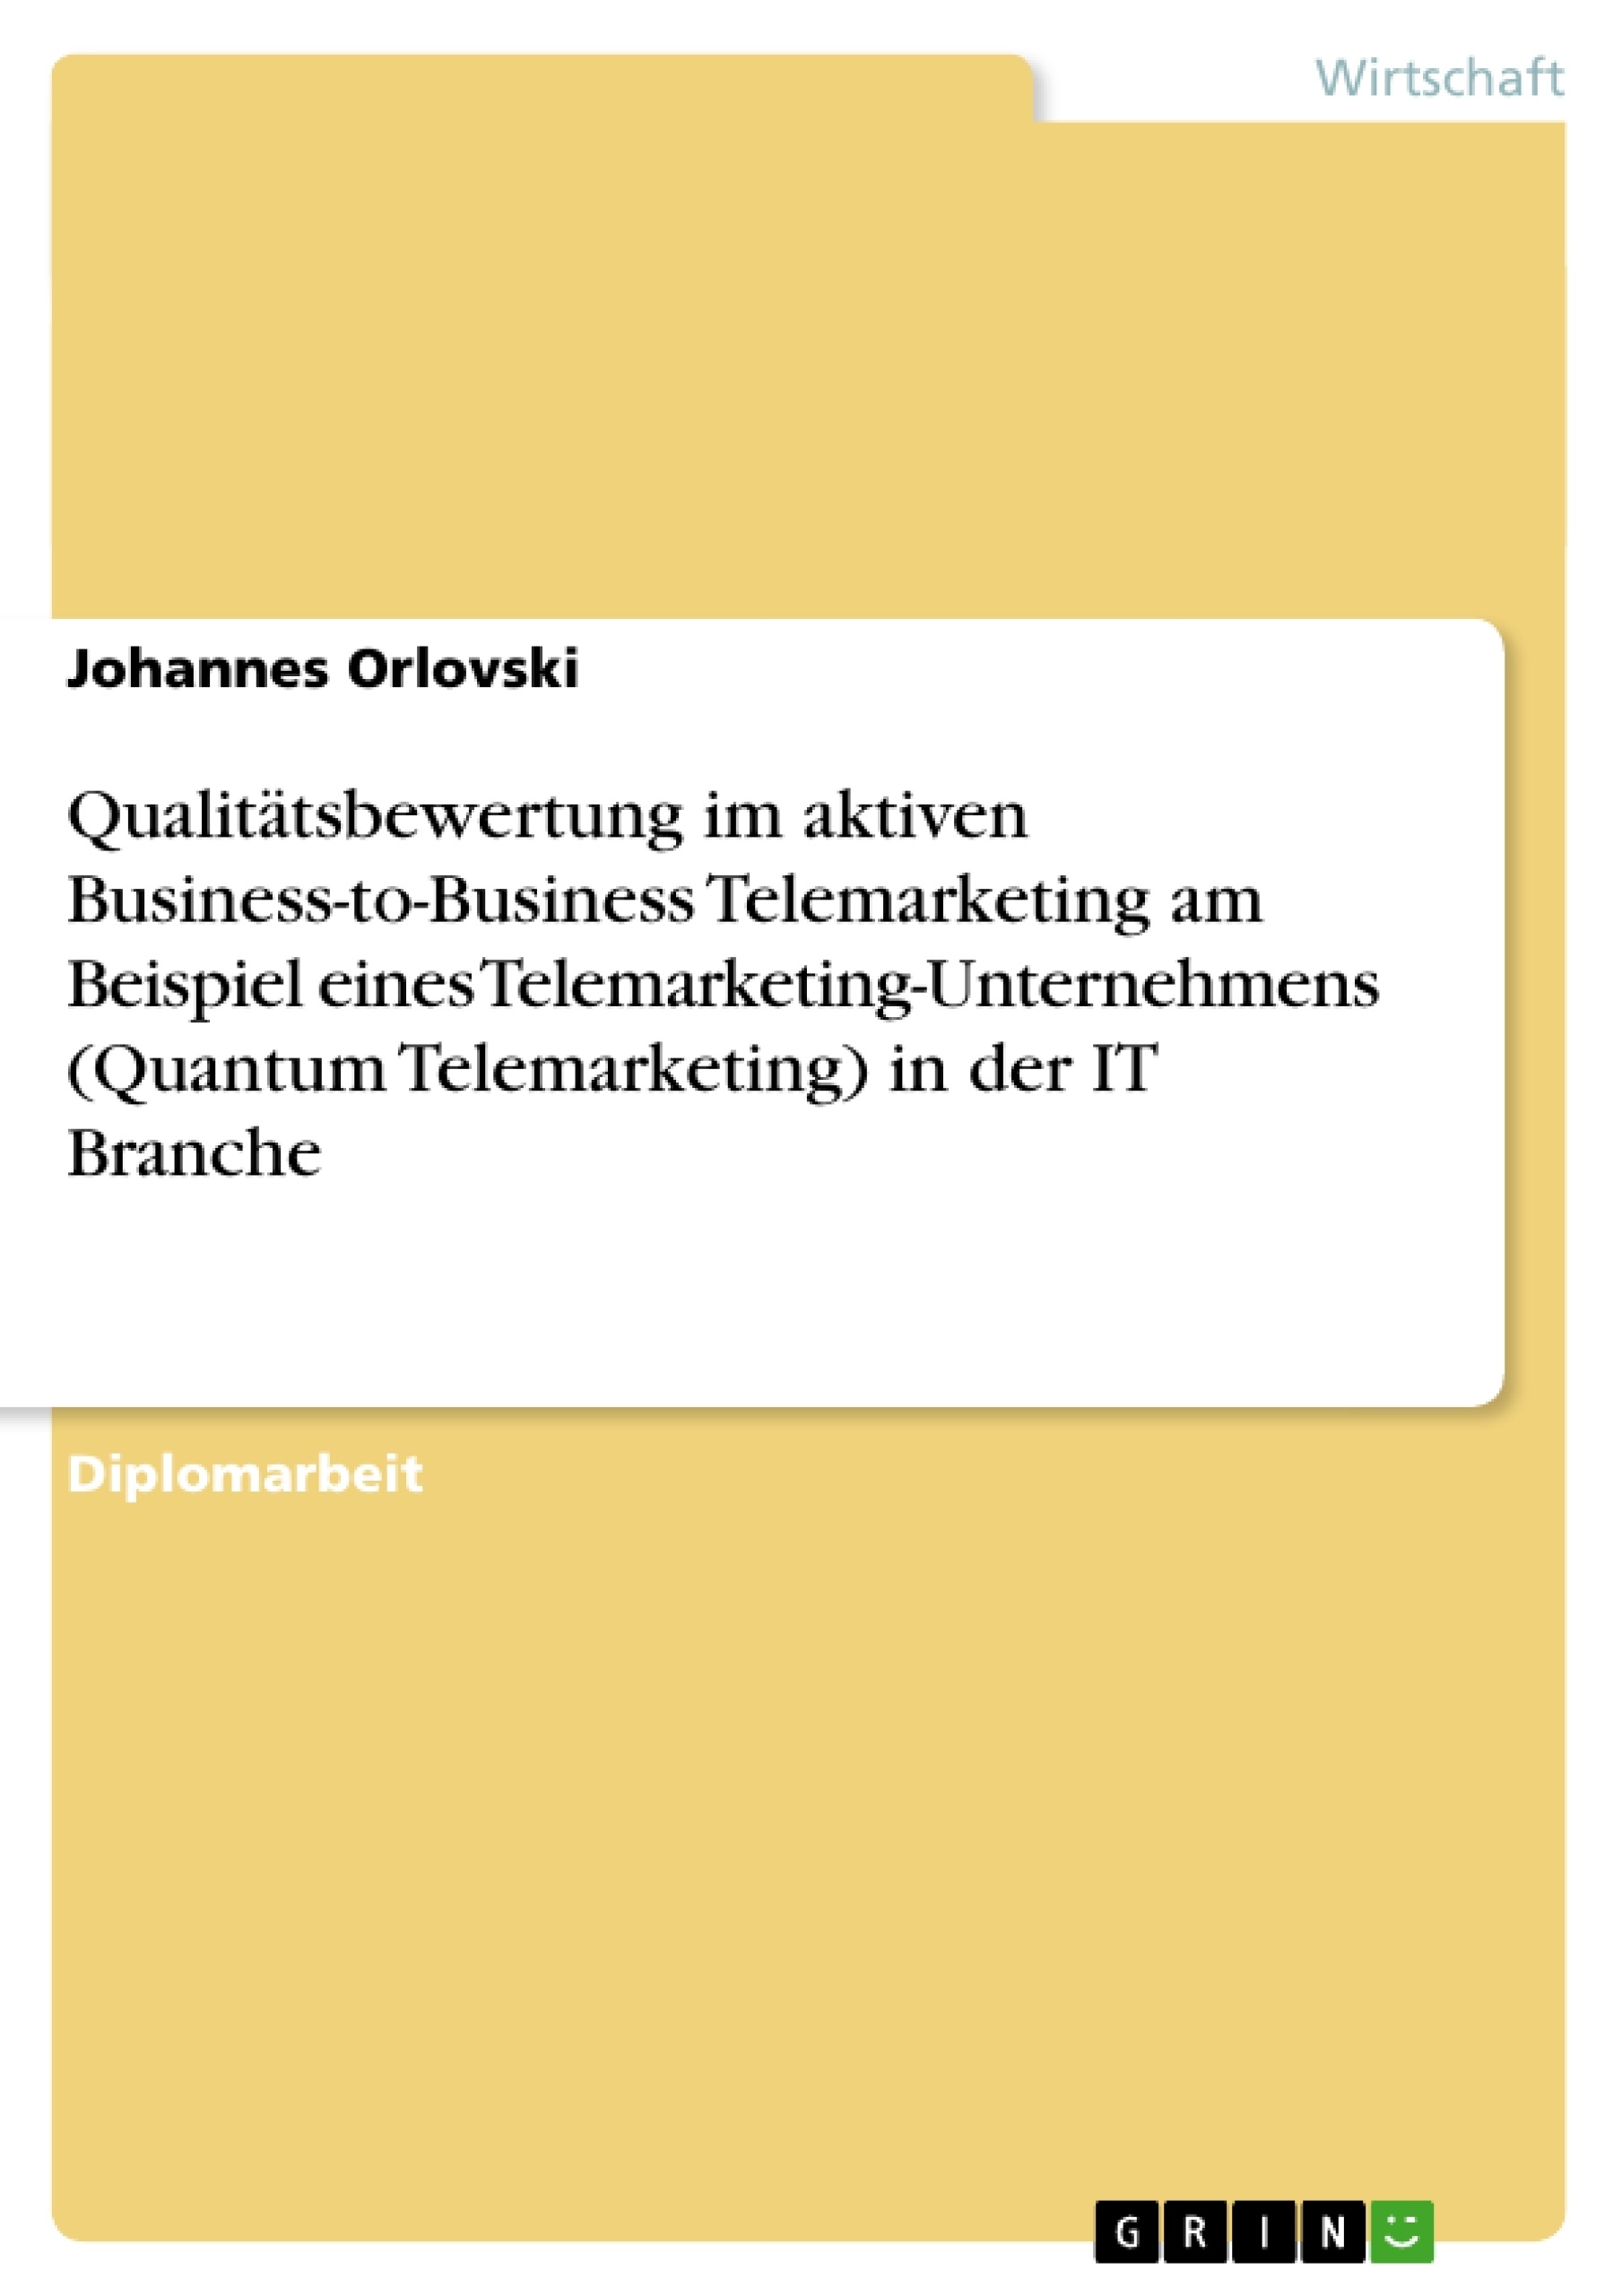 Titel: Qualitätsbewertung im aktiven Business-to-Business Telemarketing am Beispiel eines Telemarketing-Unternehmens (Quantum Telemarketing) in der IT Branche